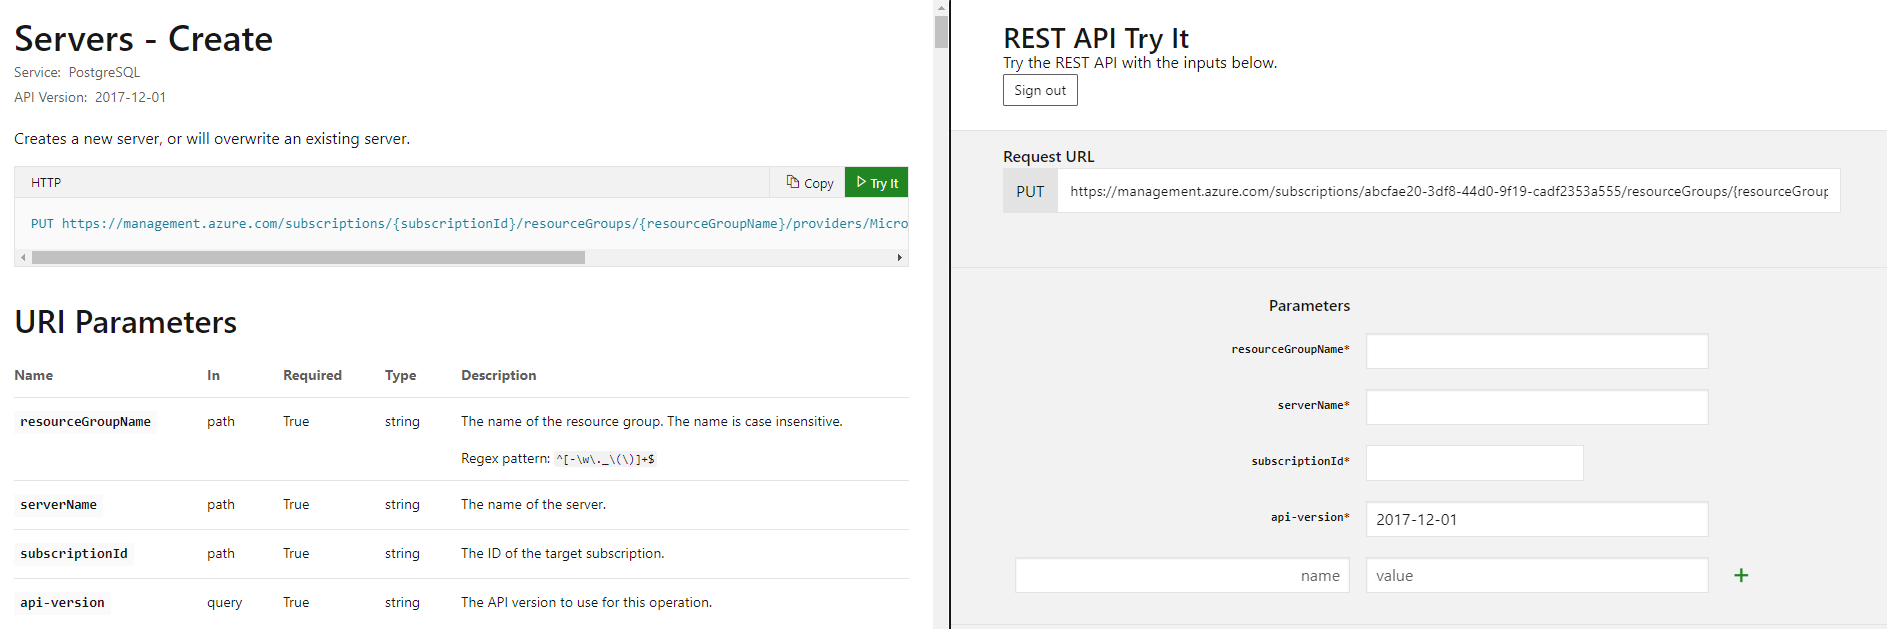 Server maken met REST API